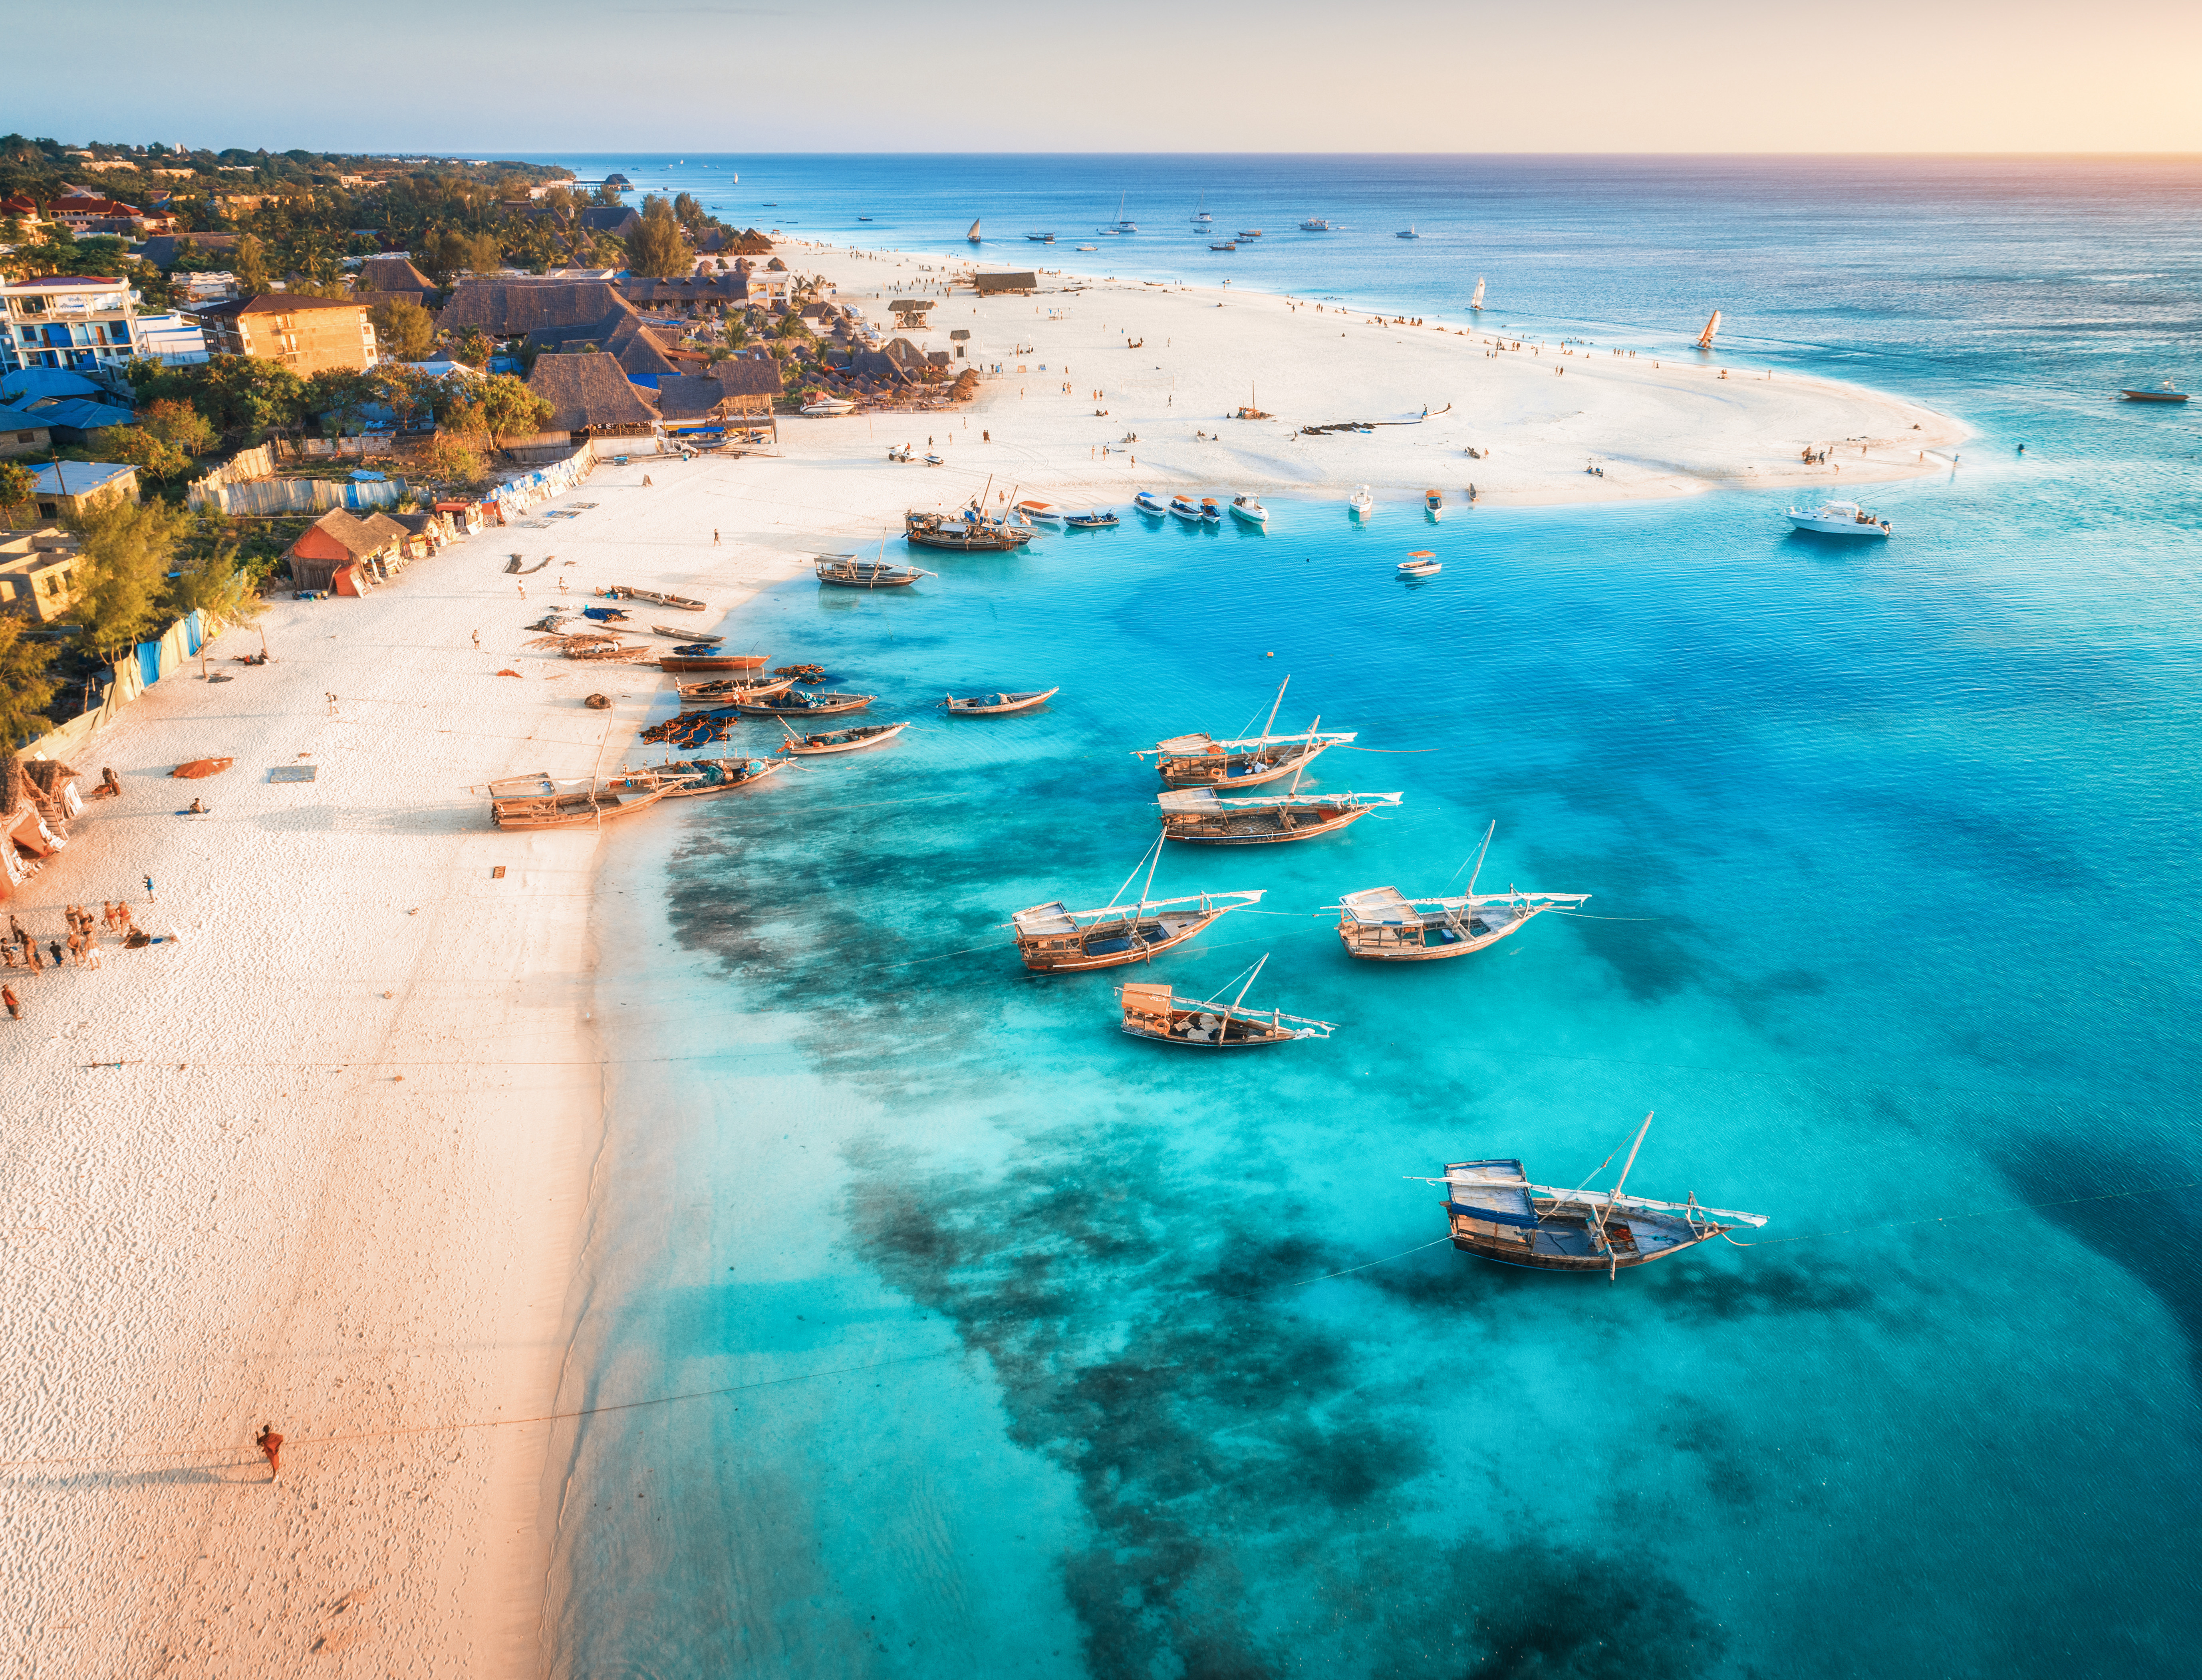 Resa till Zanzibar - strand och kristall klart blått hav som kommer in vid zanzibars kust